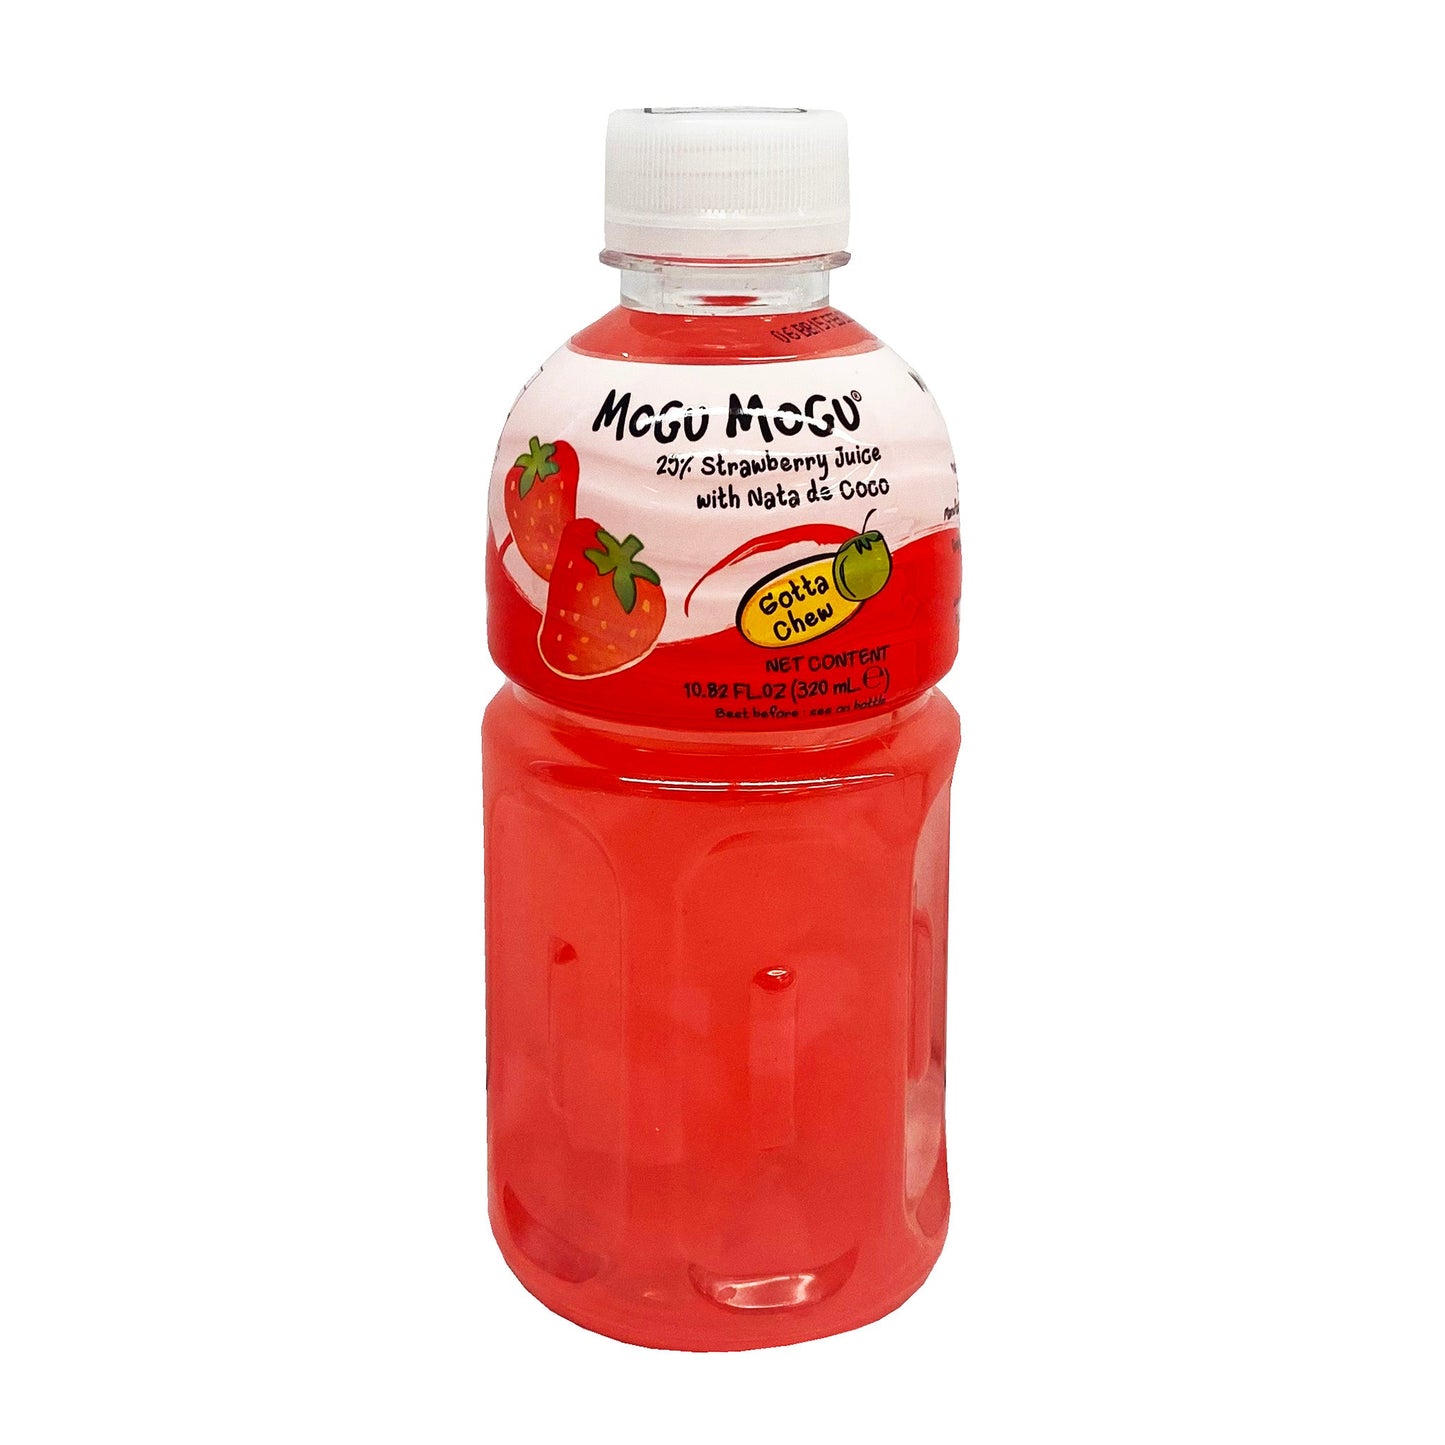 Front graphic image of Mogu Mogu Strawberry Juice with Nata De Coco 10.82oz